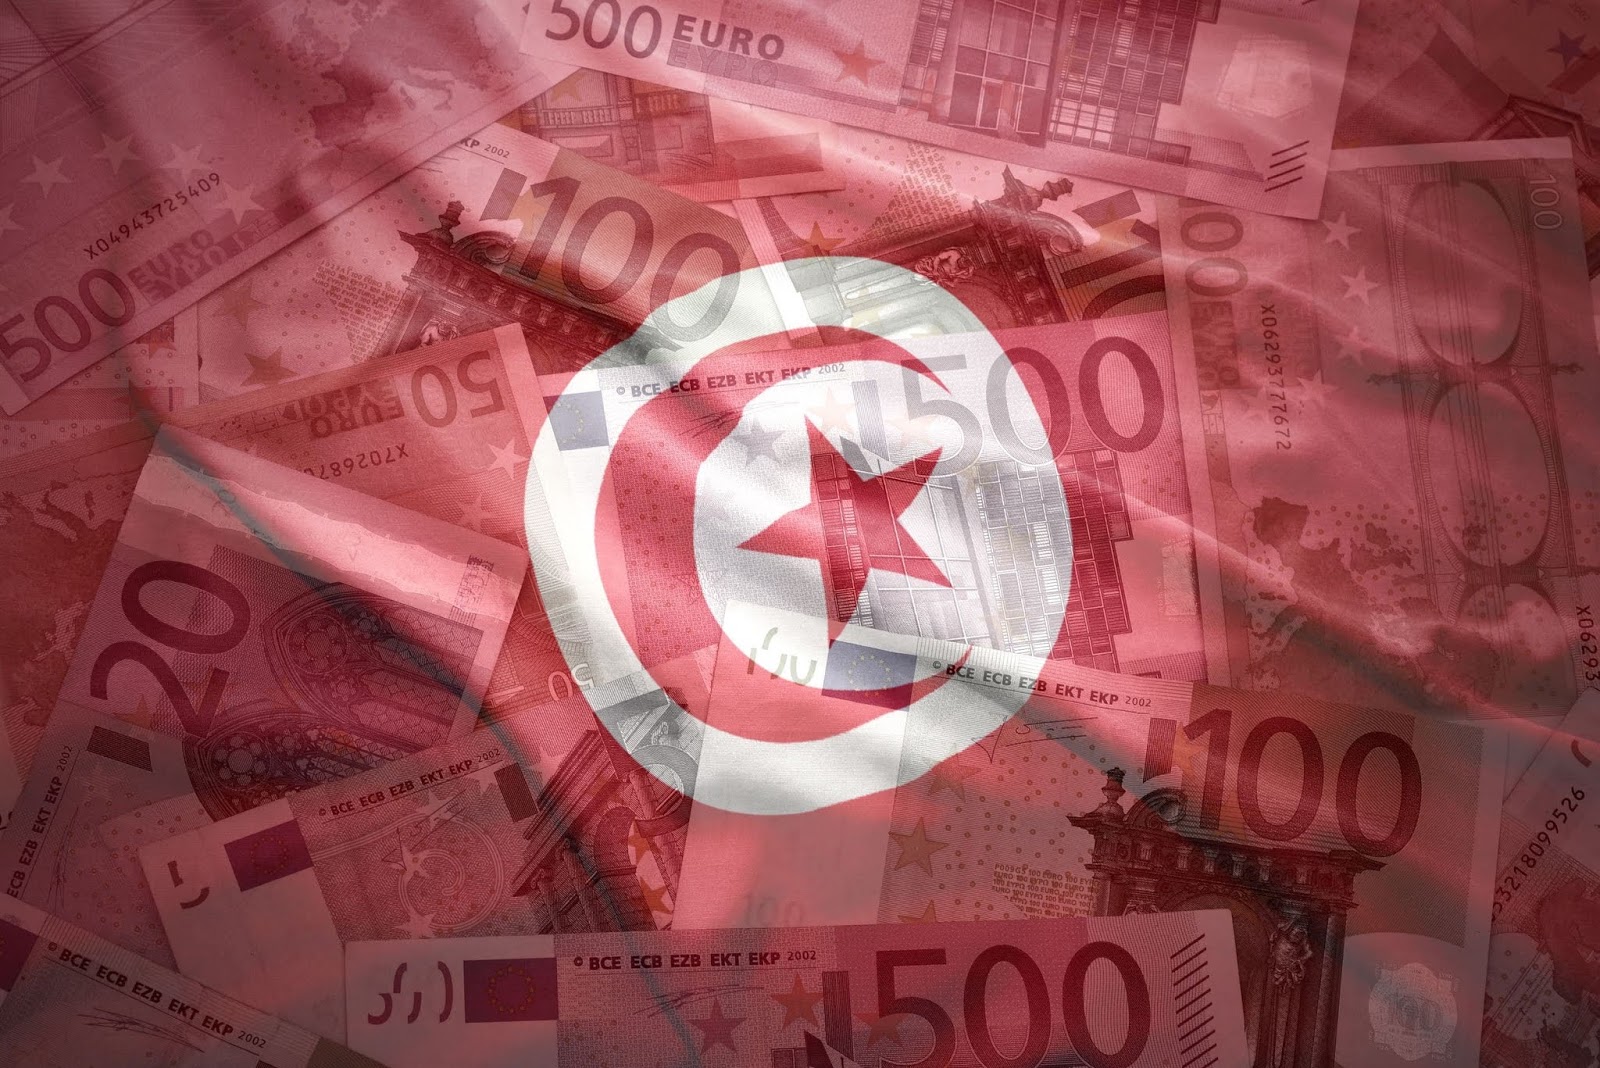 الدين العمومي لتونس يقفز إلى 101.197 مليون دينار ويتجاوز الخطوط الحمراء